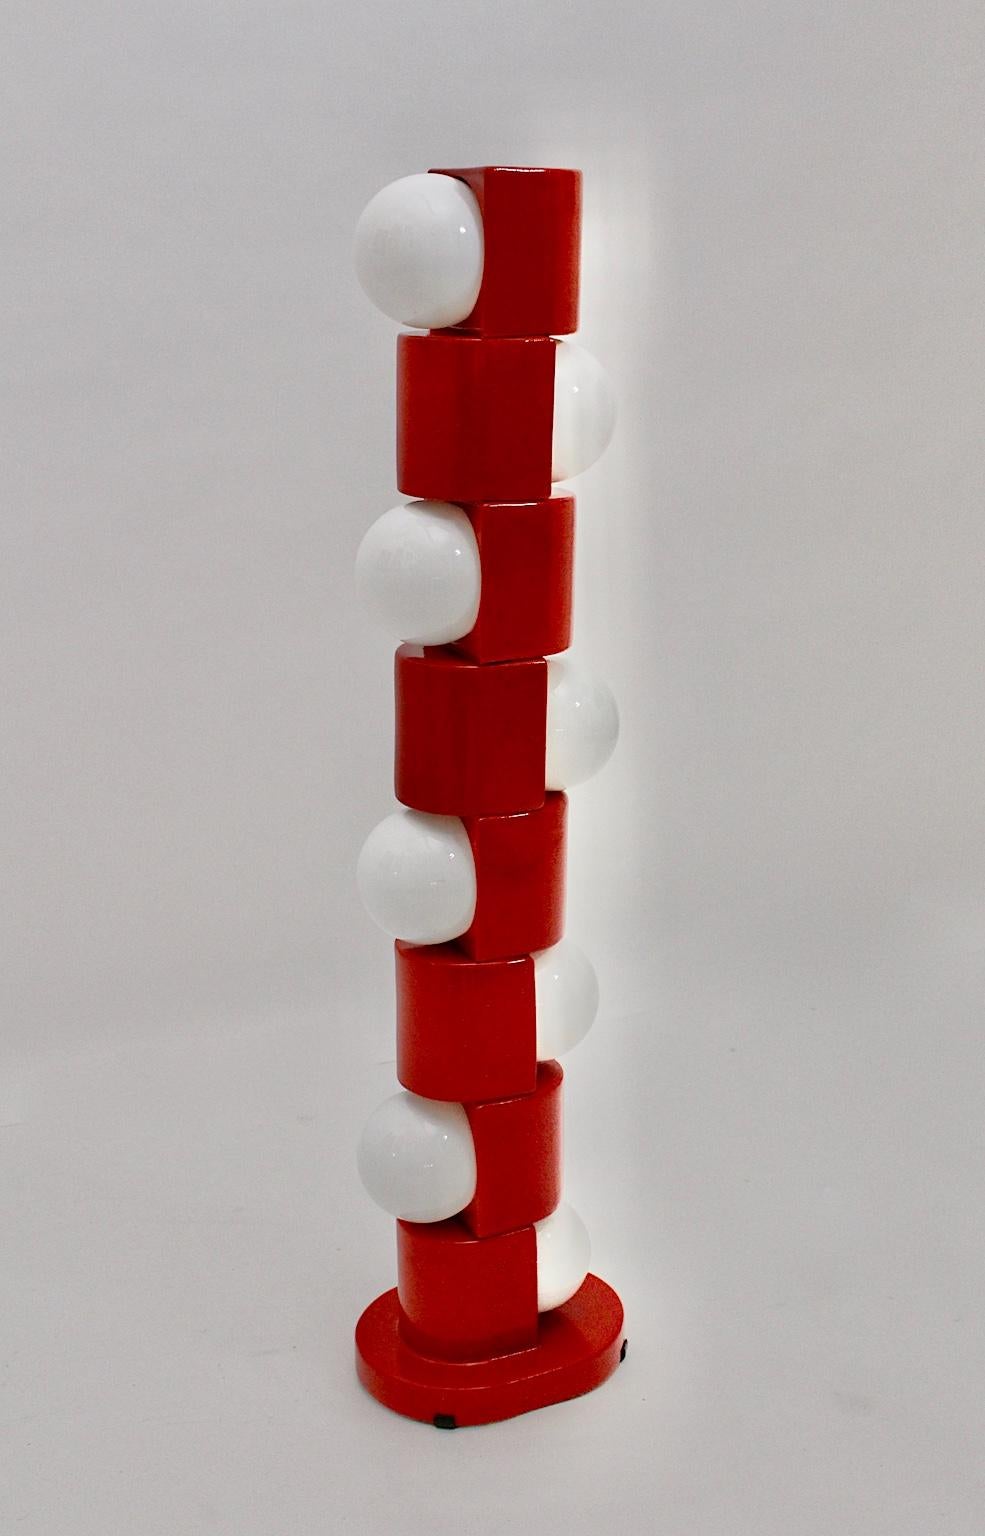 Lampadaire totem en céramique rouge de l'ère spatiale, conçu et fabriqué à la main en Italie dans les années 1960.
Le lampadaire était composé de 8 pièces géométriques, arrondies sur les côtés, avec 8 ampoules en verre blanc (douilles E 27) et un